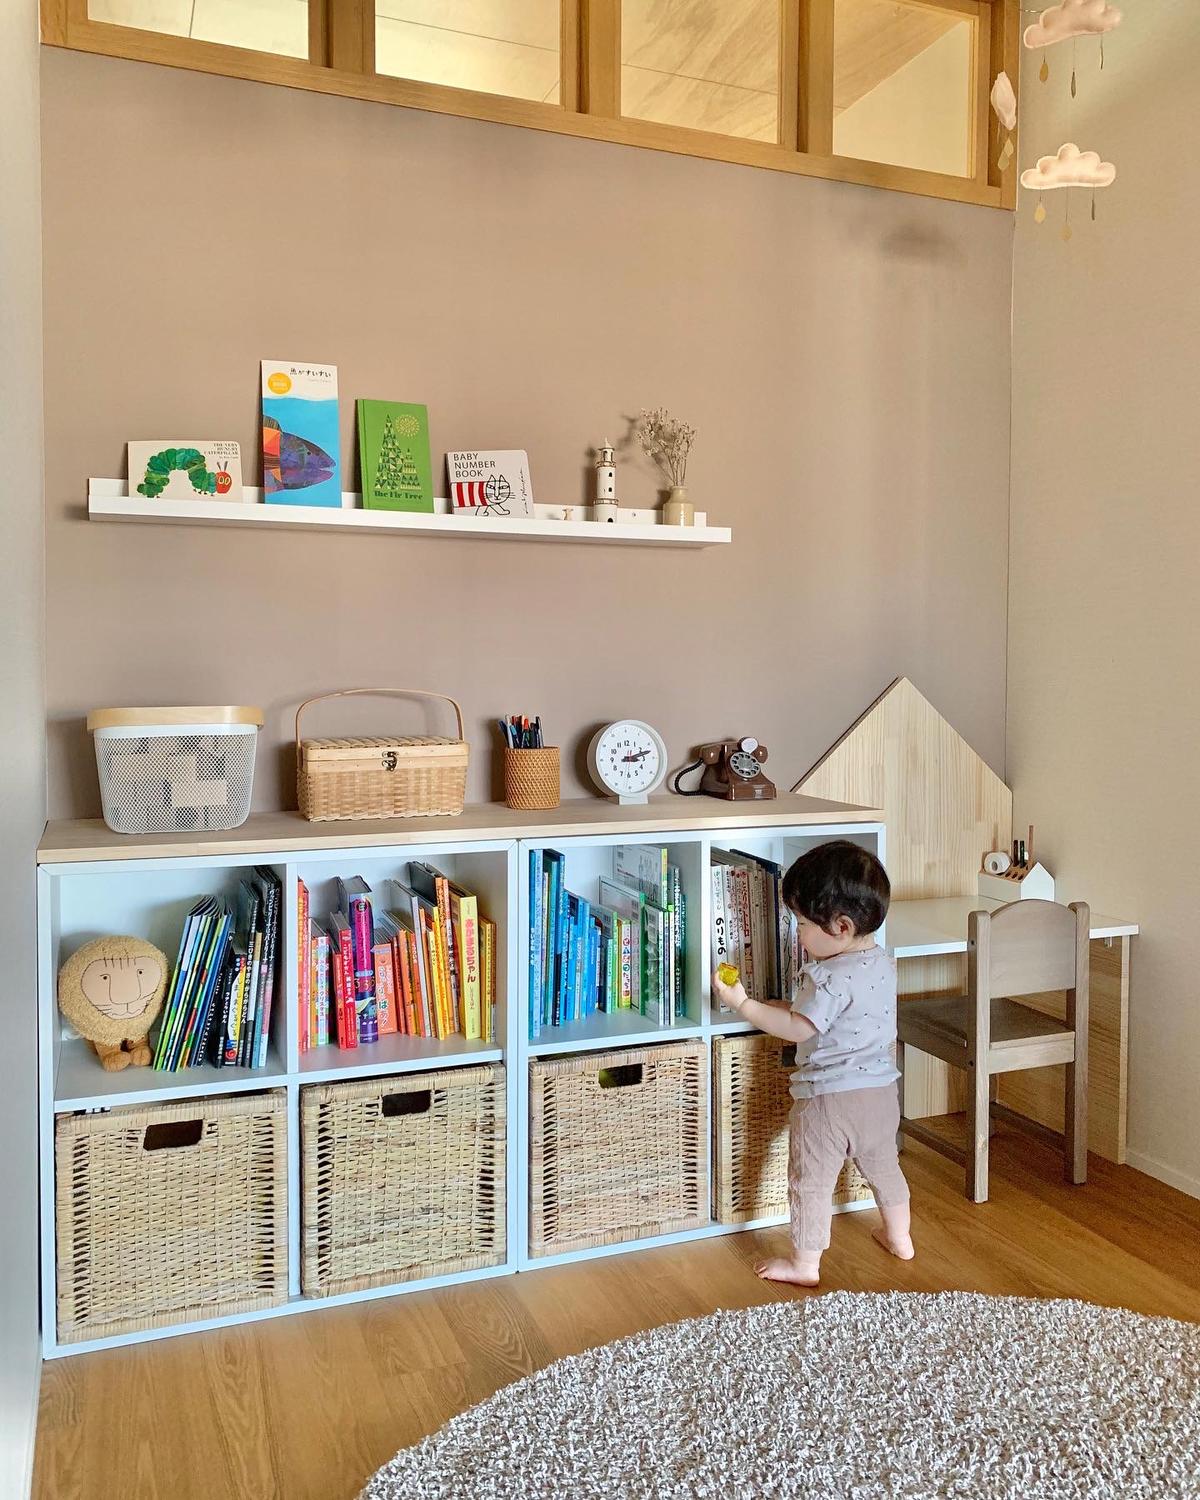 Ikeaでつくる子供部屋 Nezumiが投稿した記事 Sharee